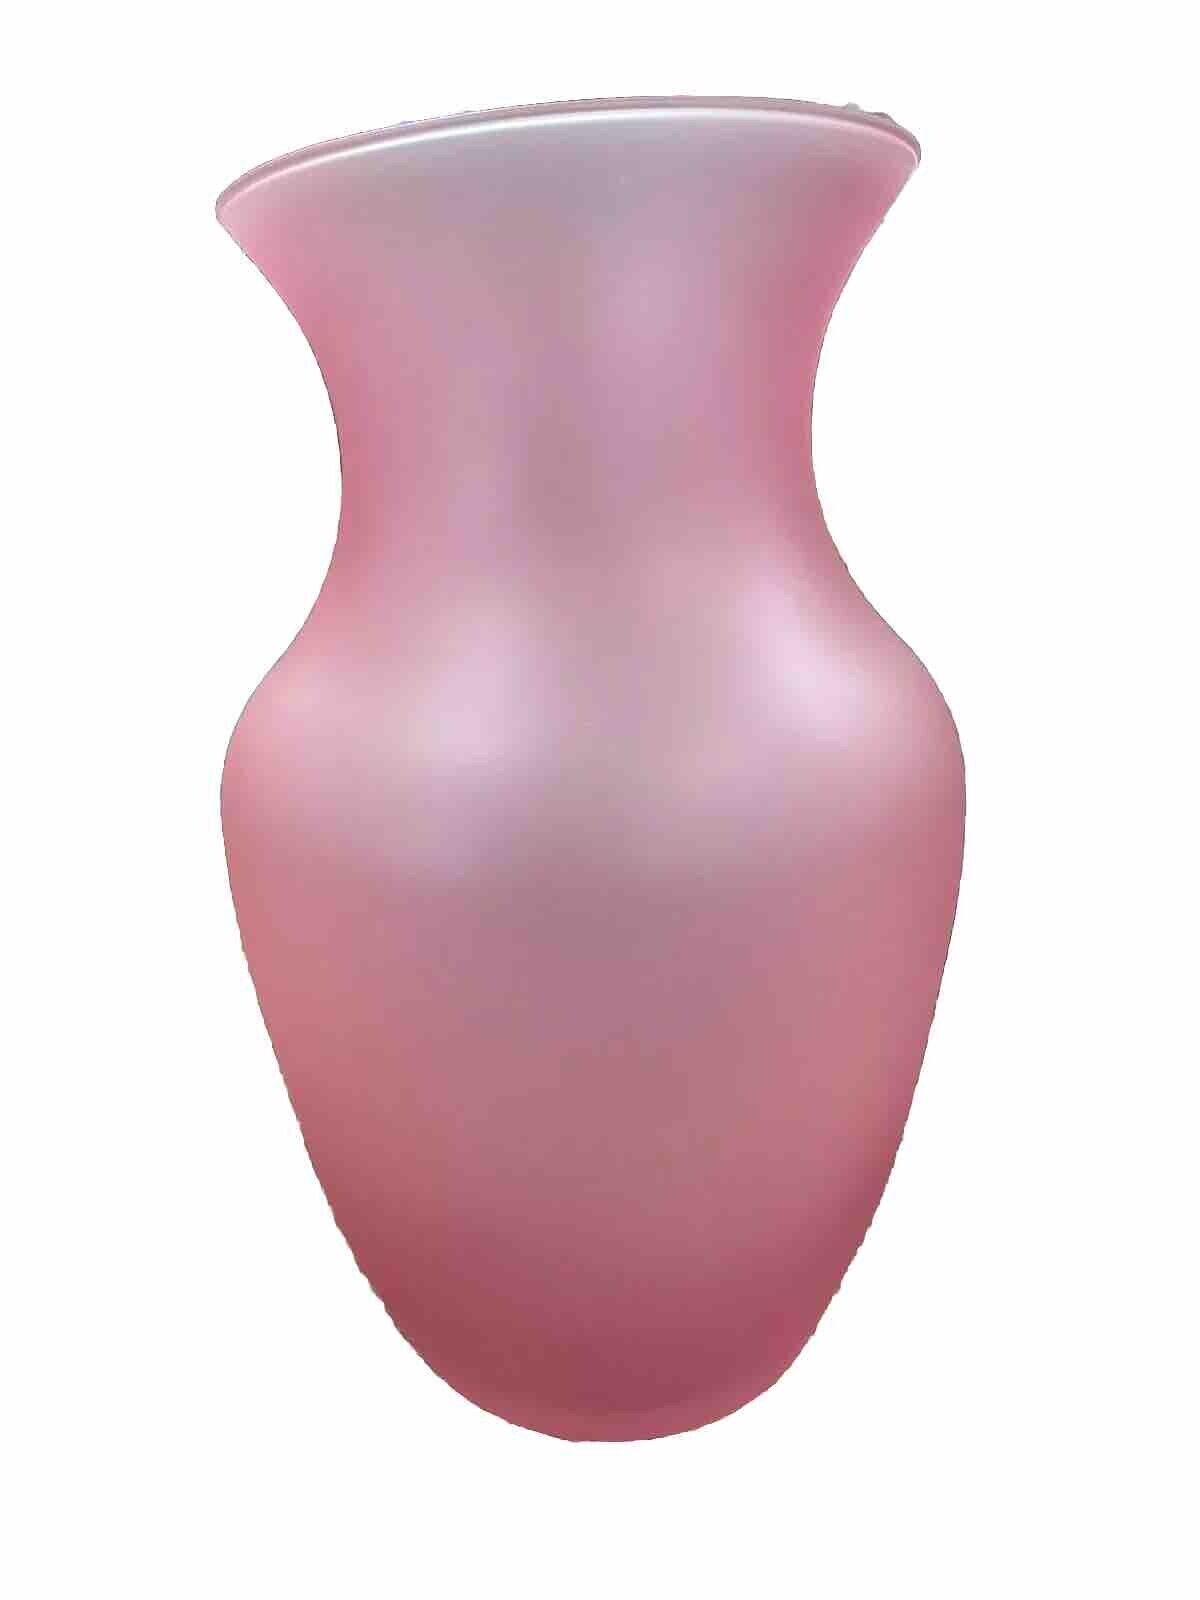 Pink Vase Decorative Pink Flower Vase Glass / Pink Frosted Glass Vase Teleflora